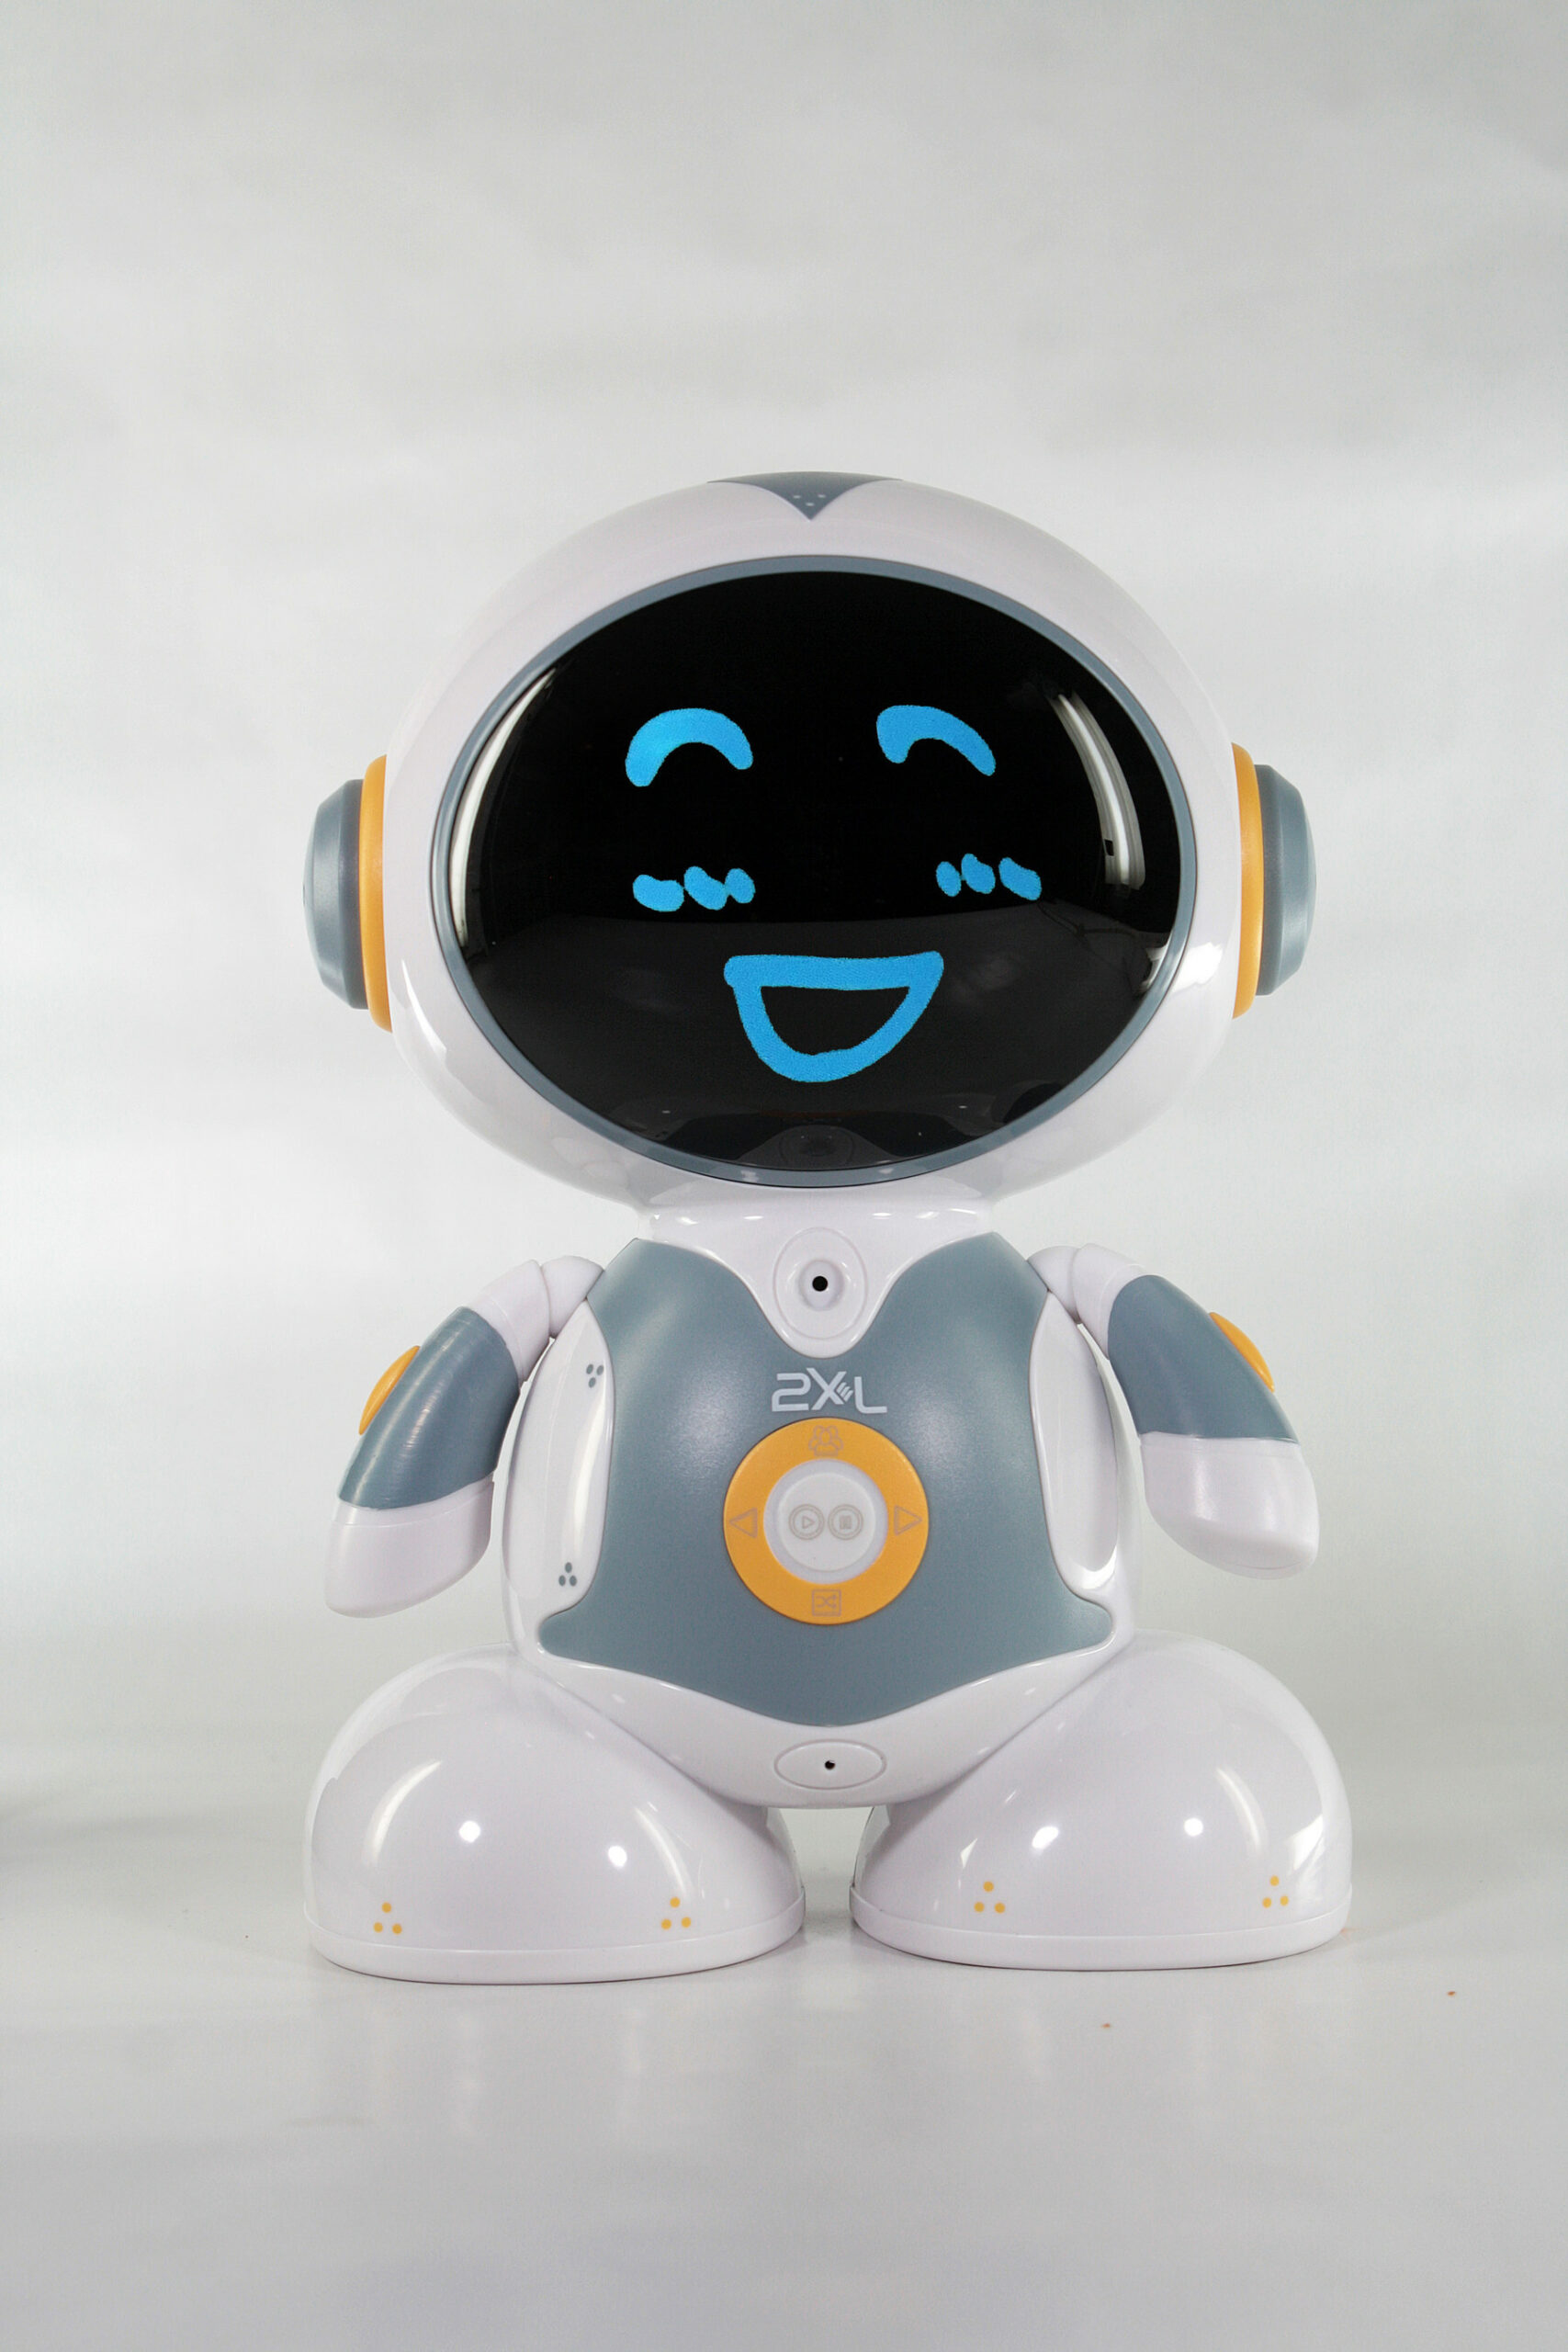 MEGO TOYS’ 2XL AI ROBOT FOR KIDS LAUNCHES ON AMAZON